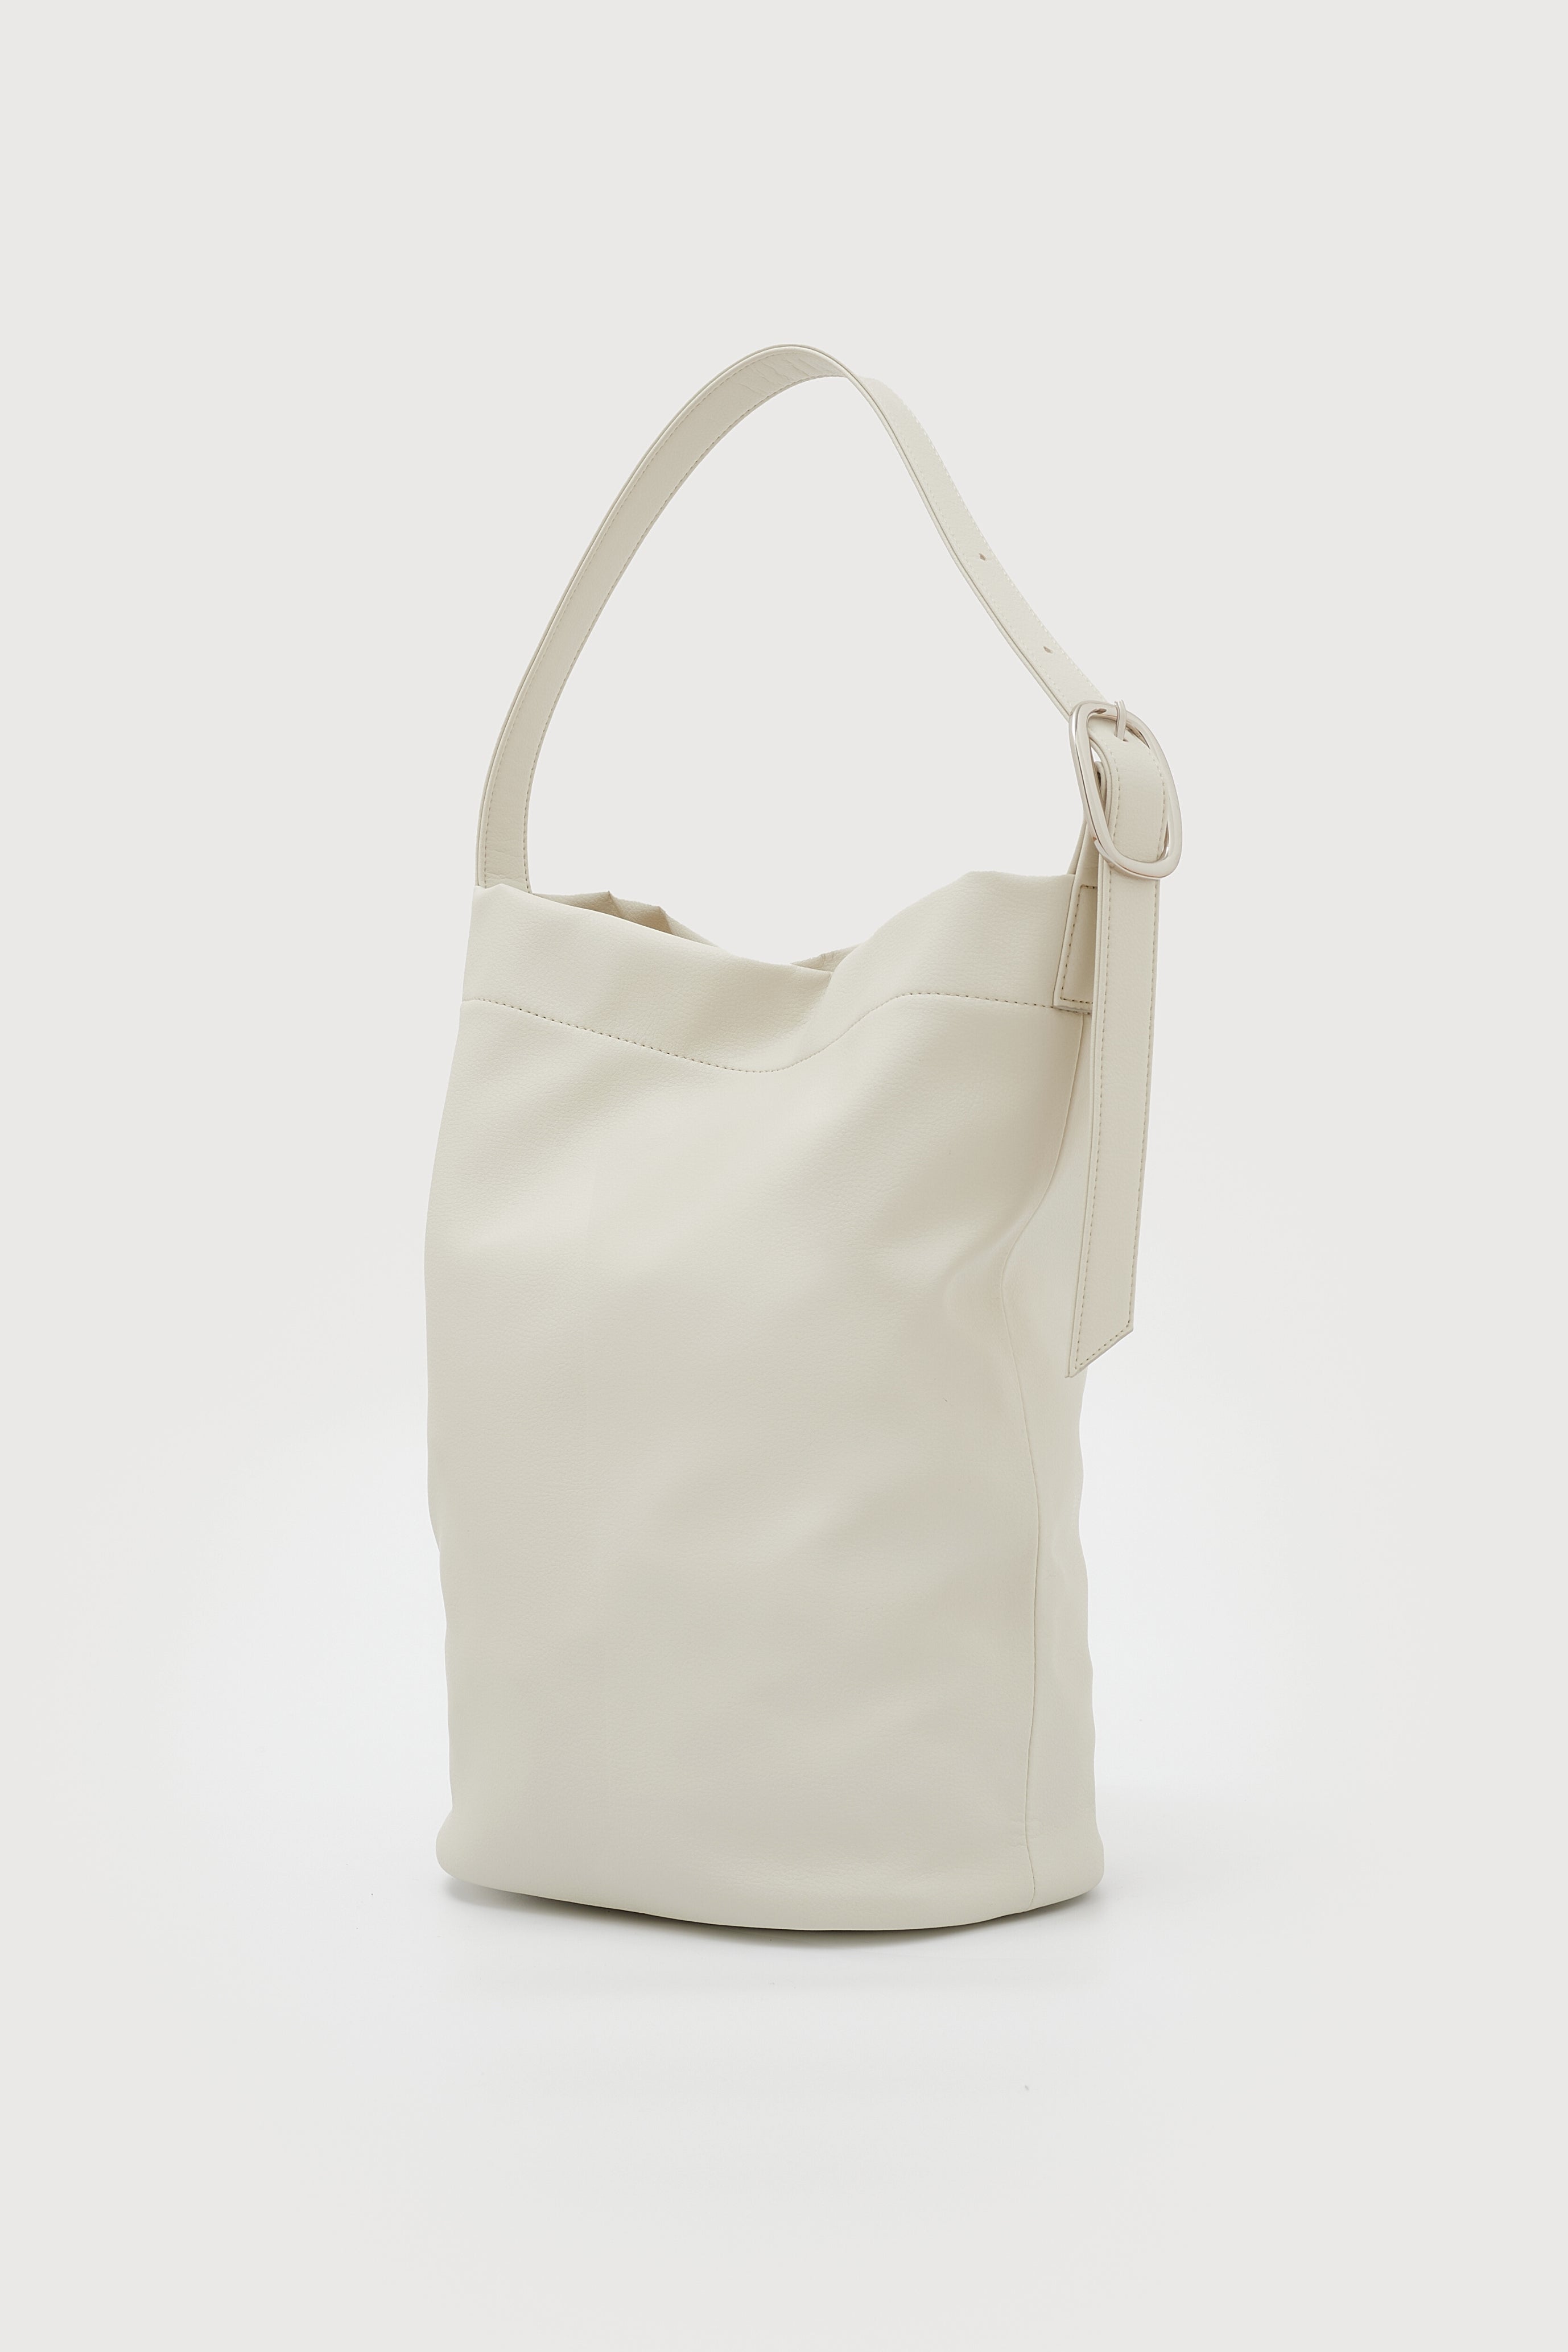 国産アップルレザー製トートバッグ「Apple 2Way Tote Bag」 | LOVST 